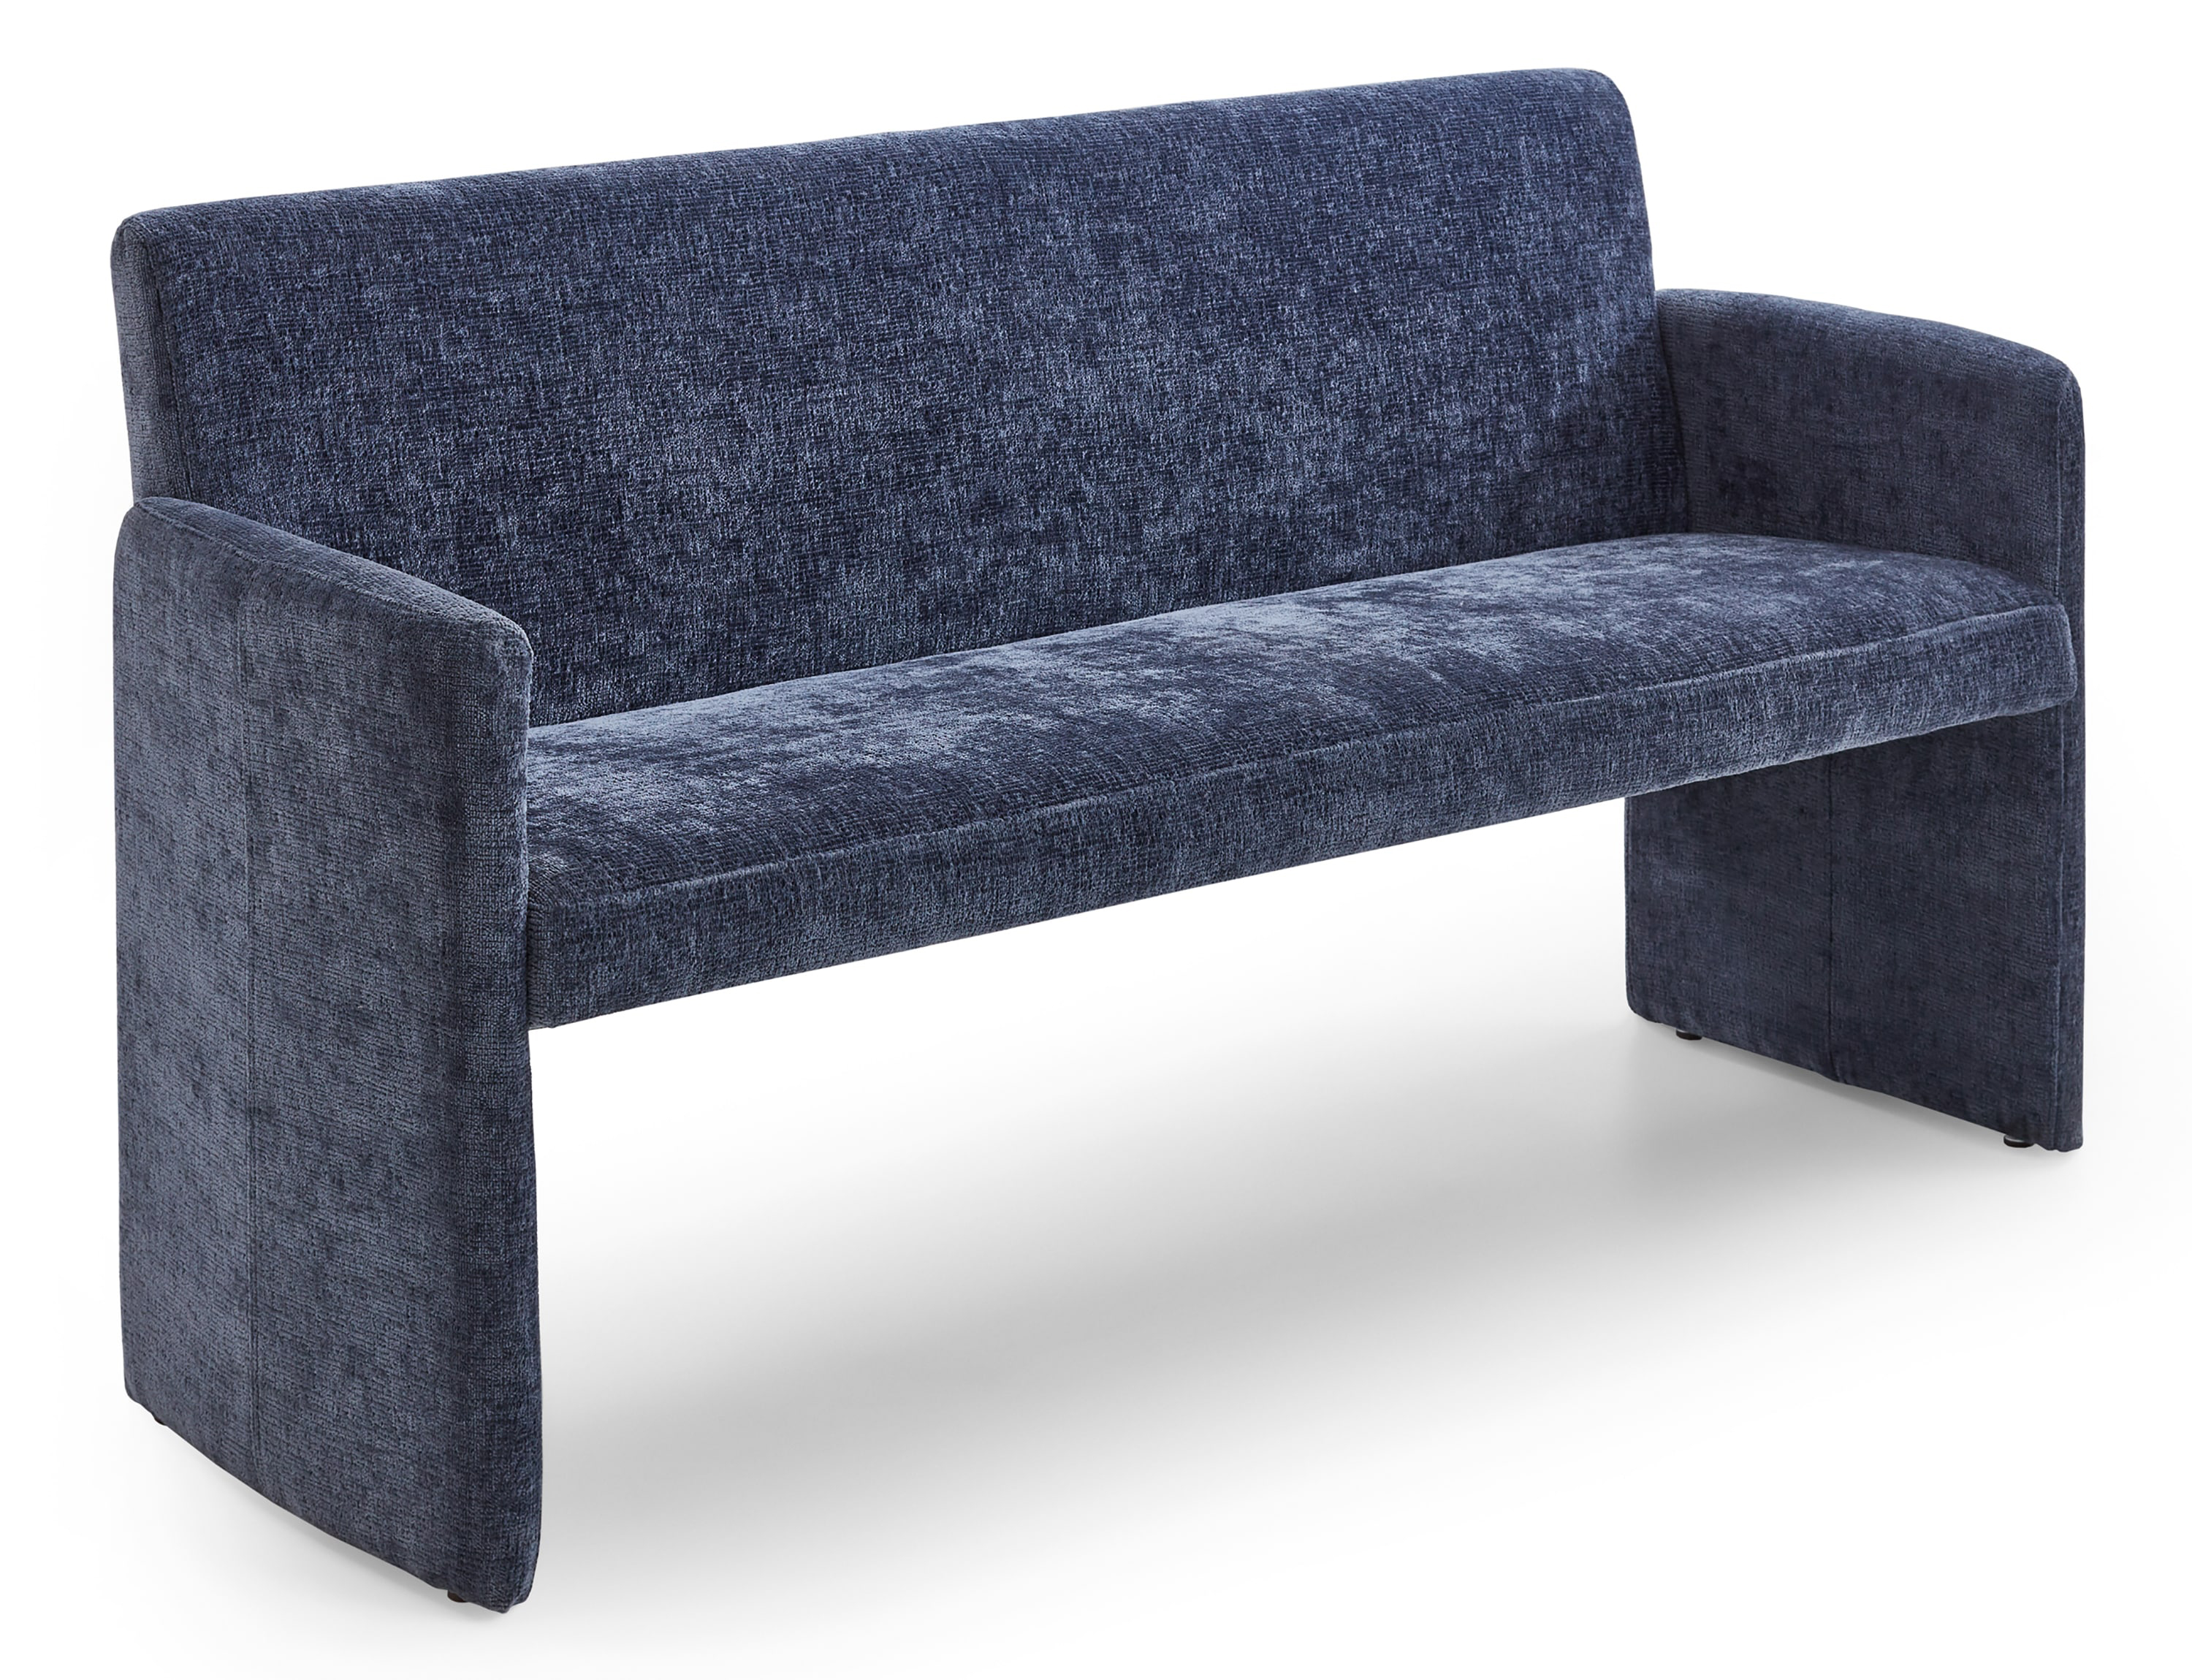 Standard Furniture Loria Polsterbank mit Armlehnen in blau